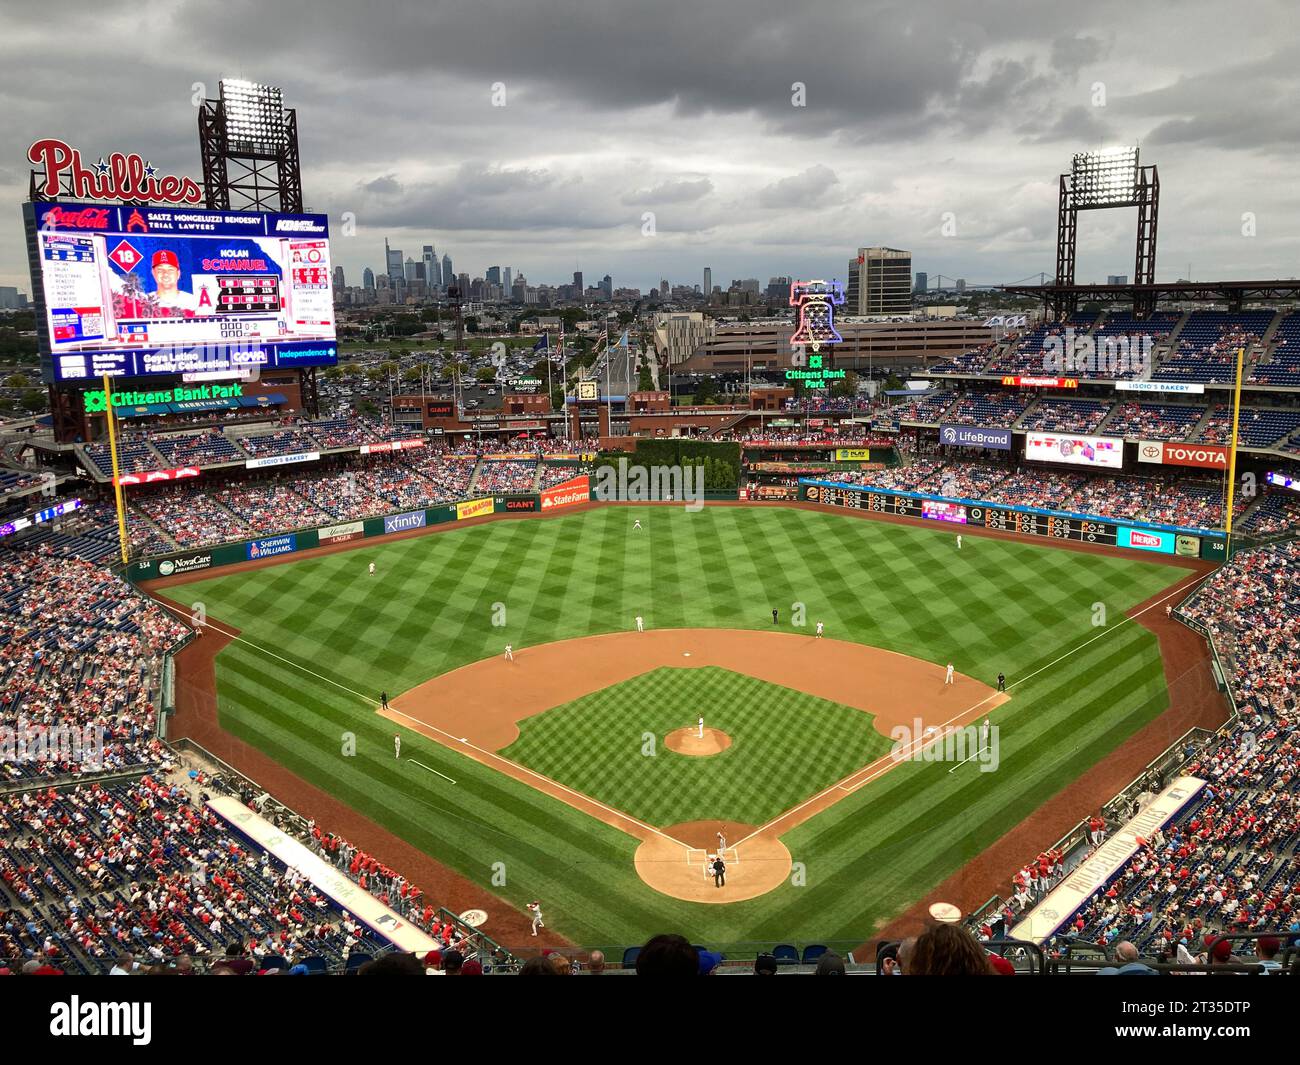 Citezens Bank Park, domicile de l'équipe de baseball des Phillies de Philadelphie, Philadelphie Pennsylvanie États-Unis Banque D'Images